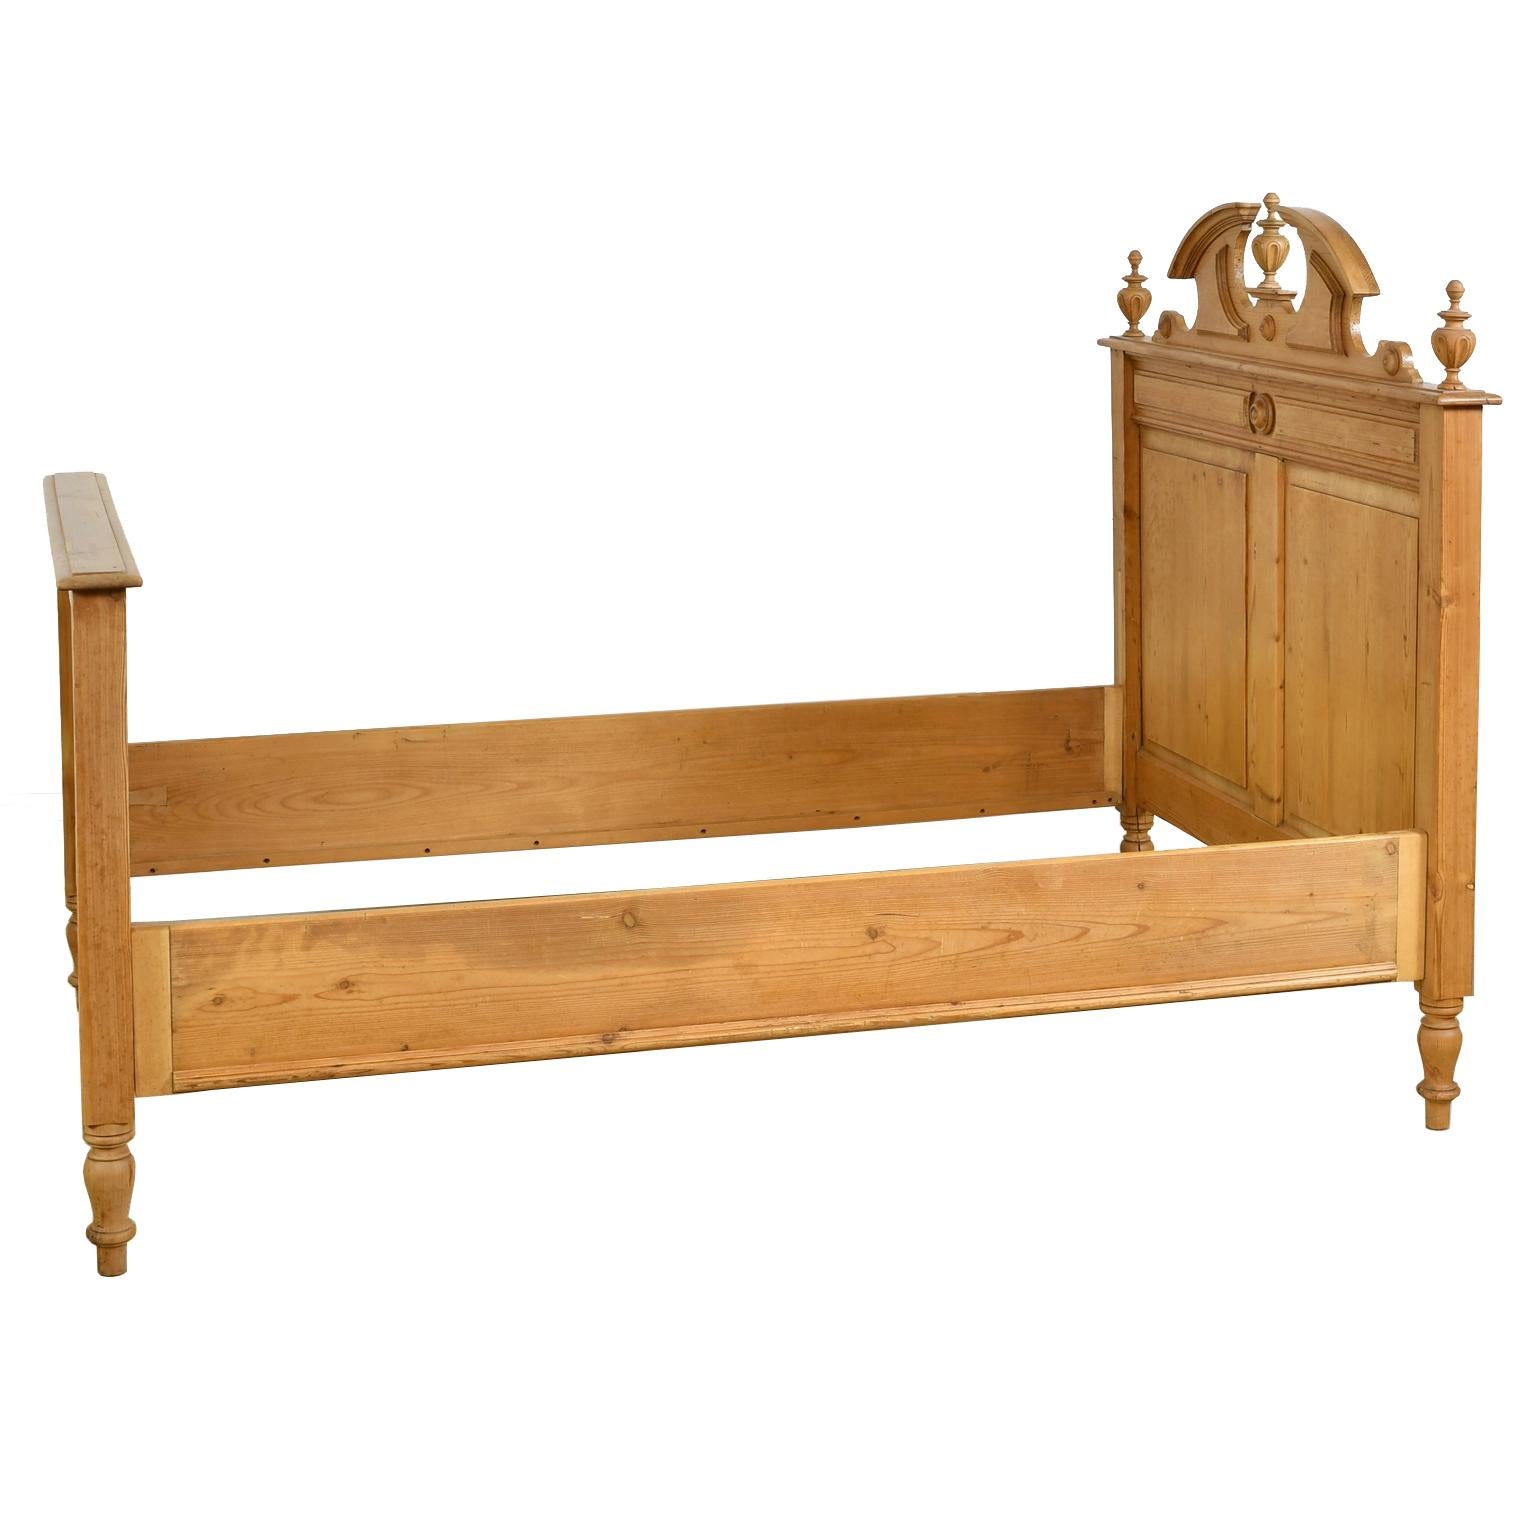 antique pine bed frame